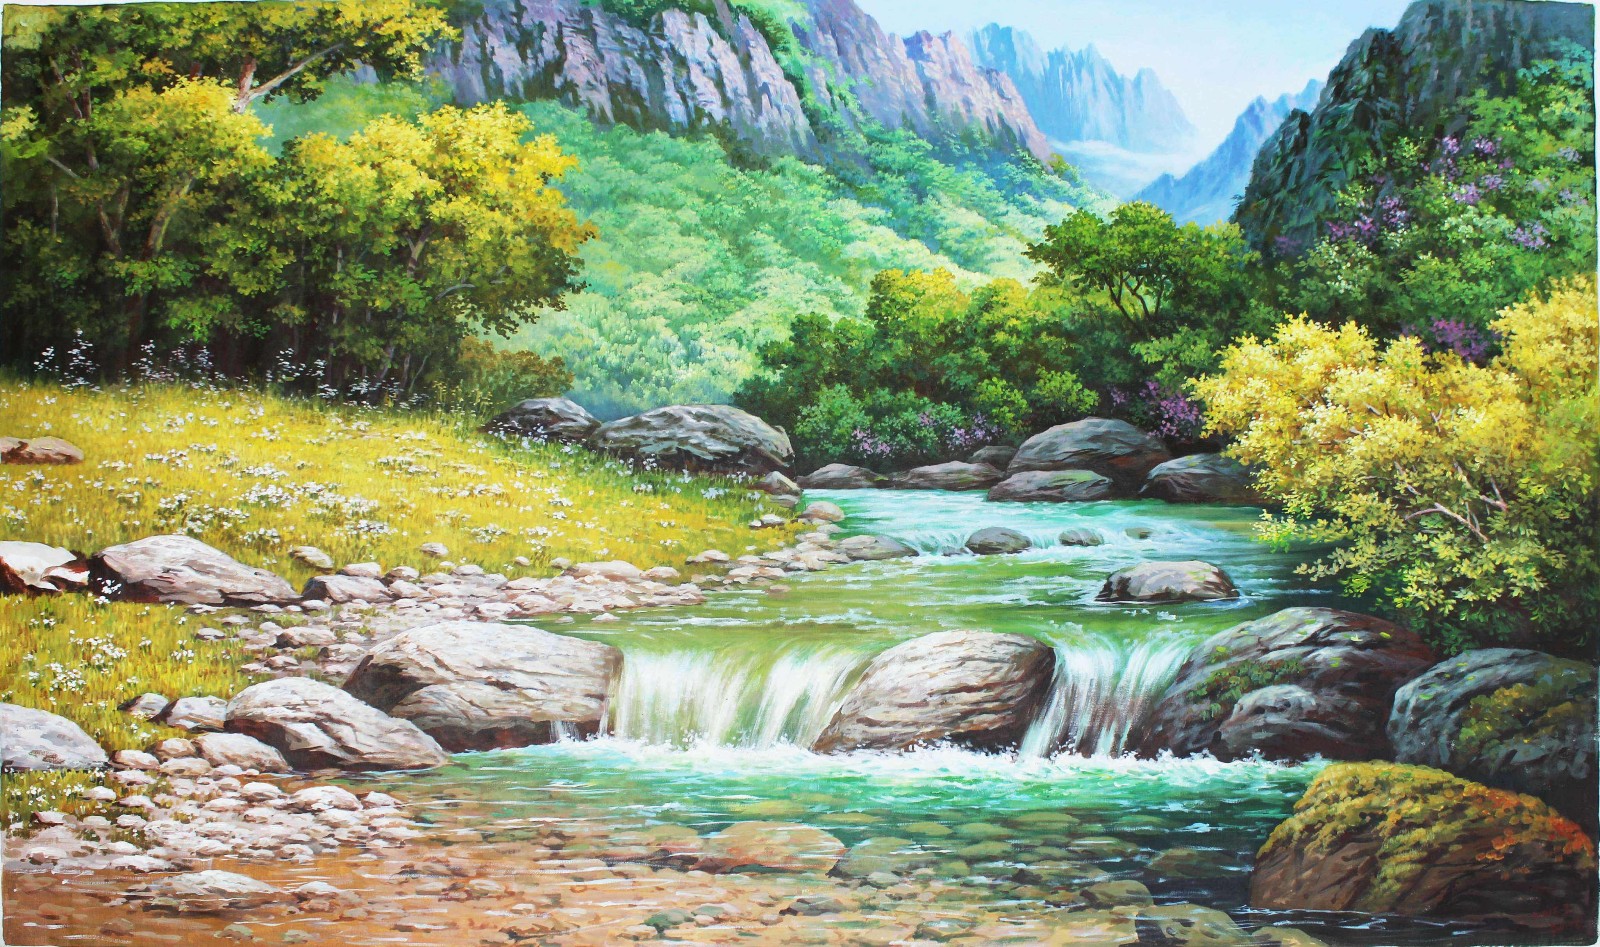 朝鲜油画风景图欣赏,朝鲜油画风景图片大全